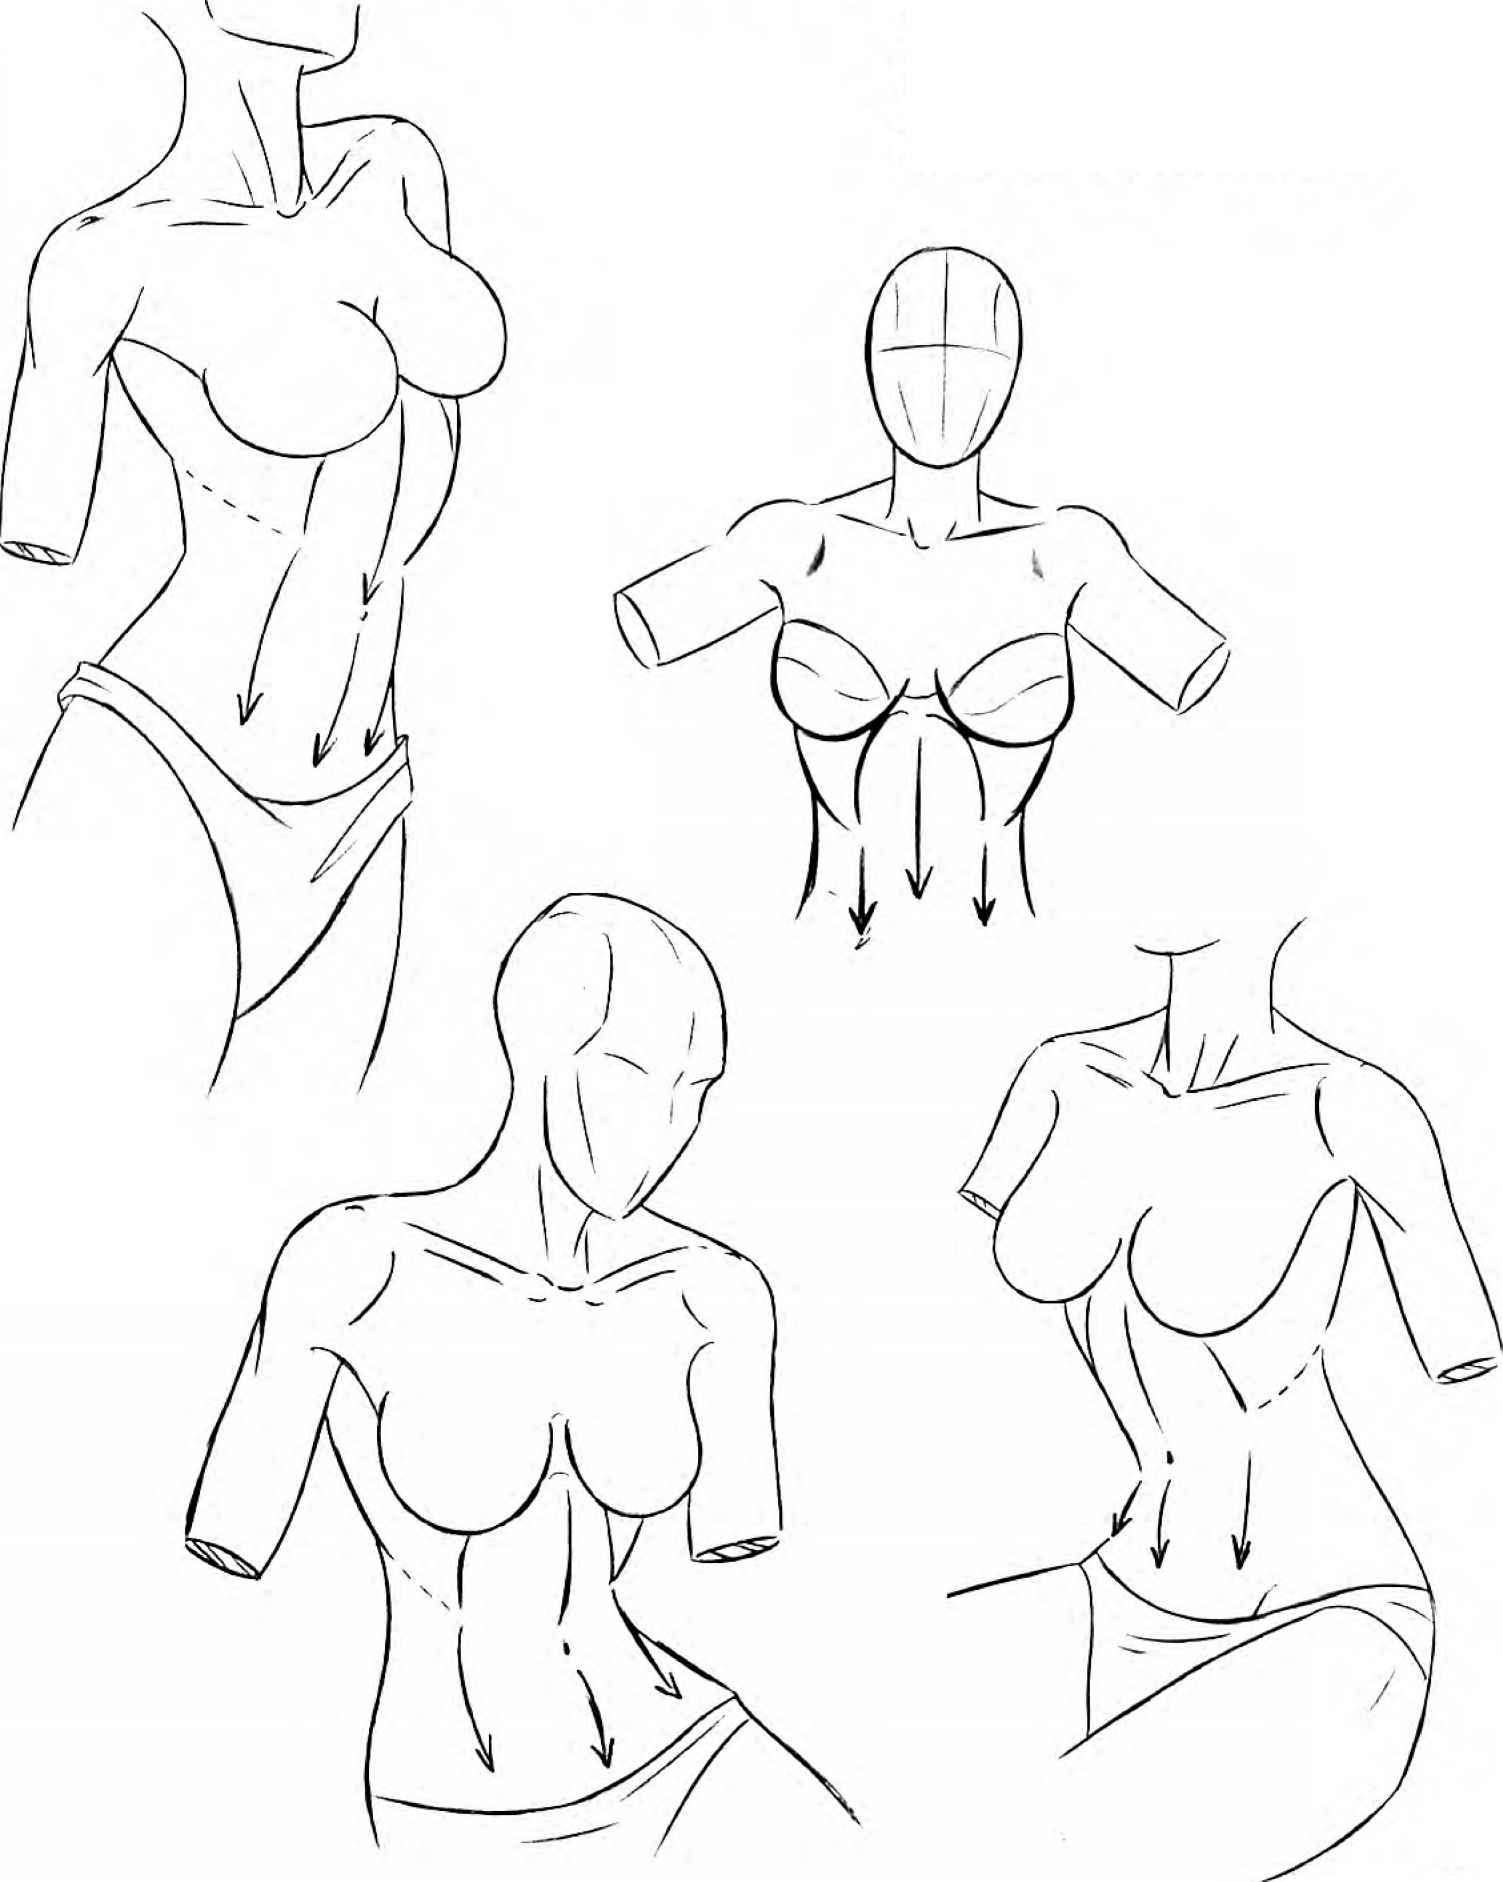 как нарисовать грудь женщин фото 21